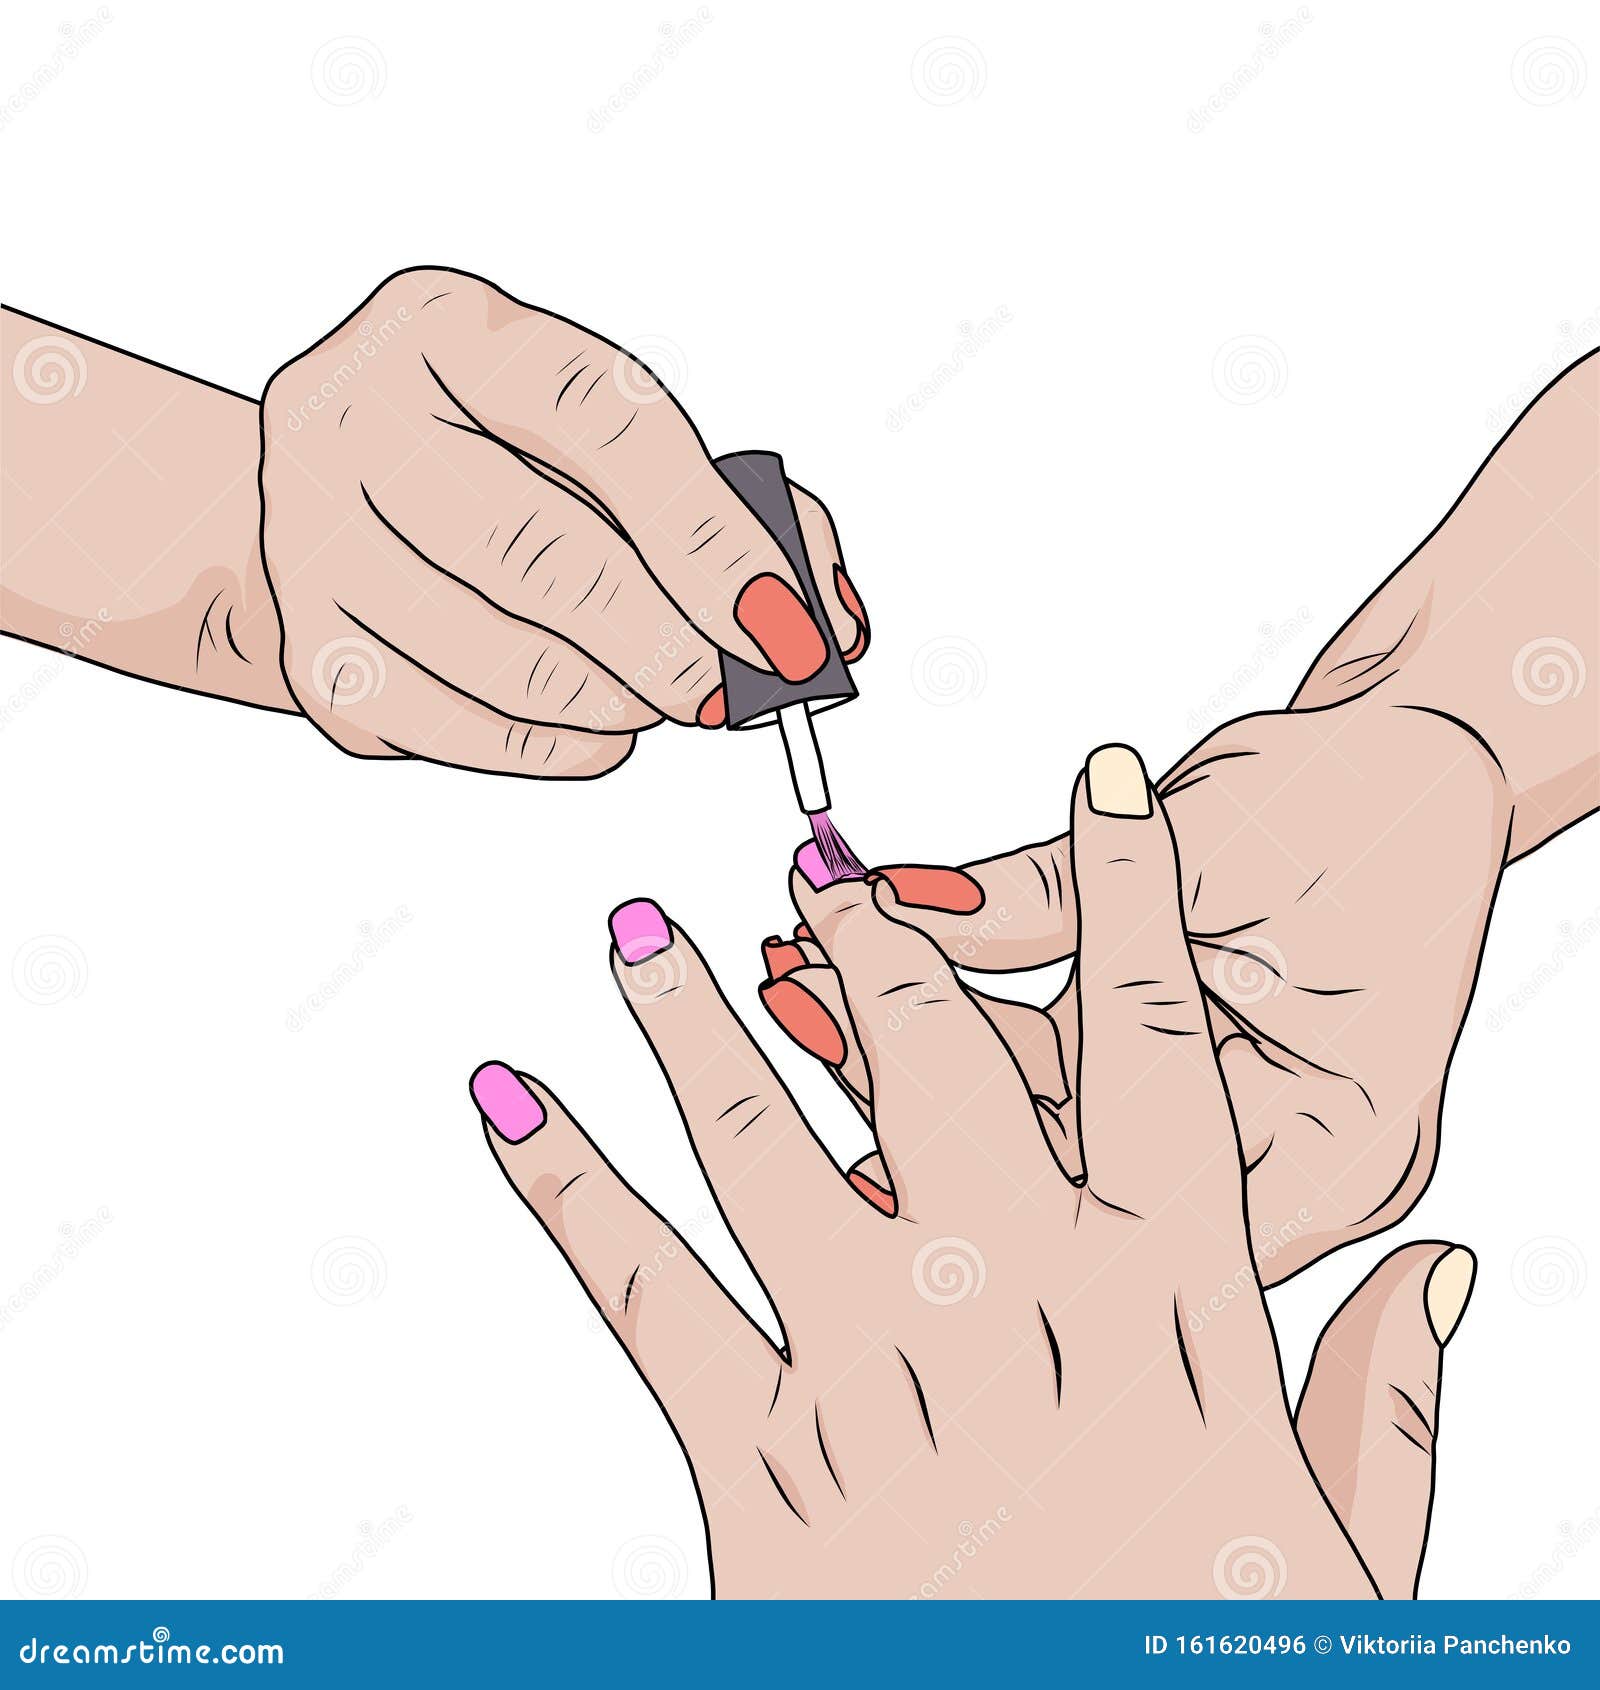 nail-design-atlanta-ga-001 - Treat Your Nails